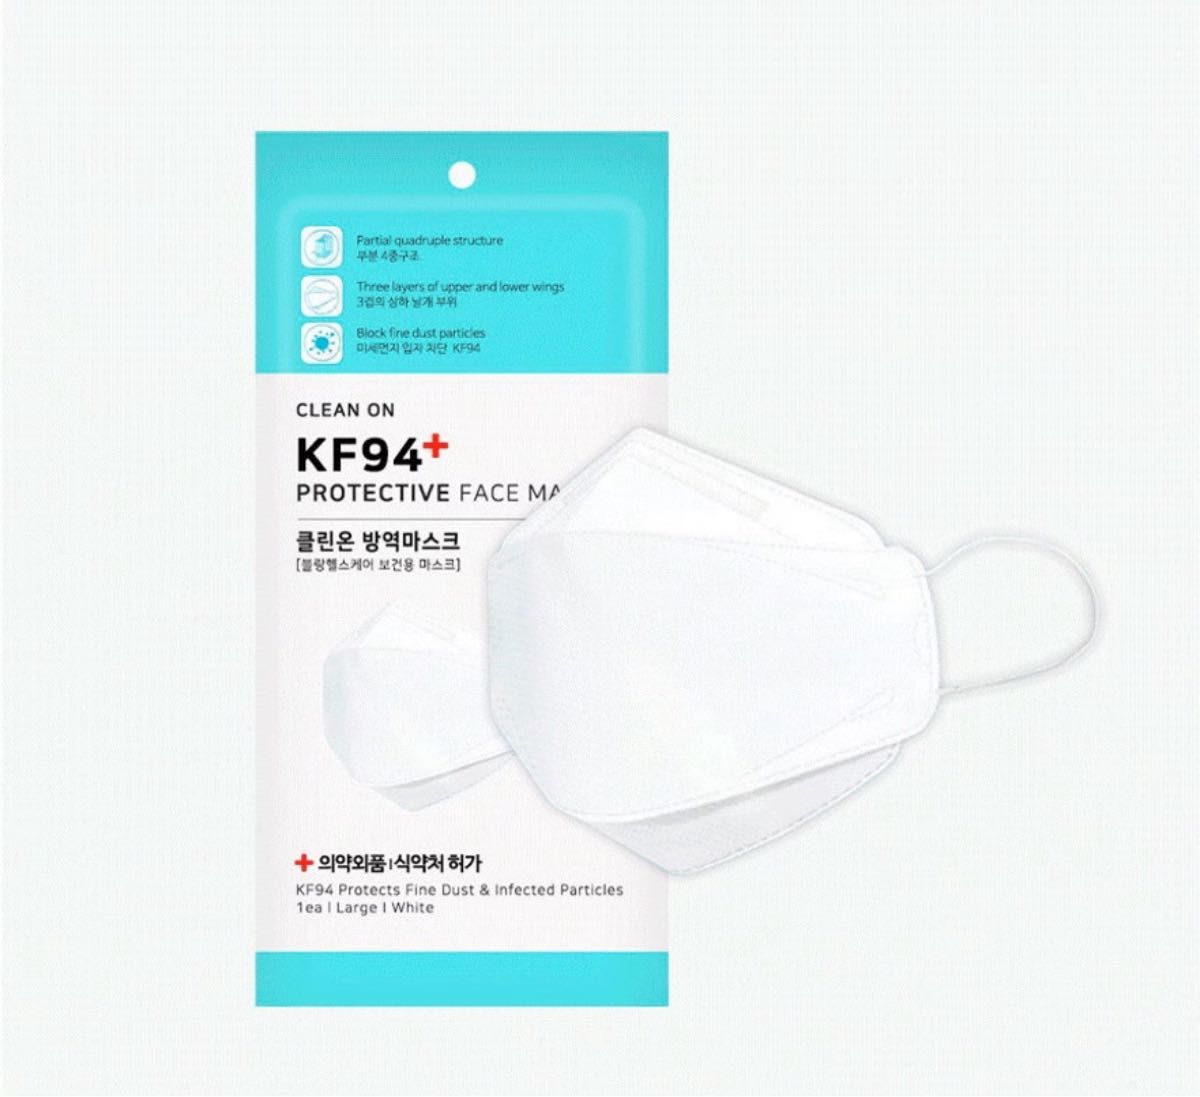 【個包装の新品】kf94マスク 140枚まとめ売り 医療認可,不織布,ホワイト